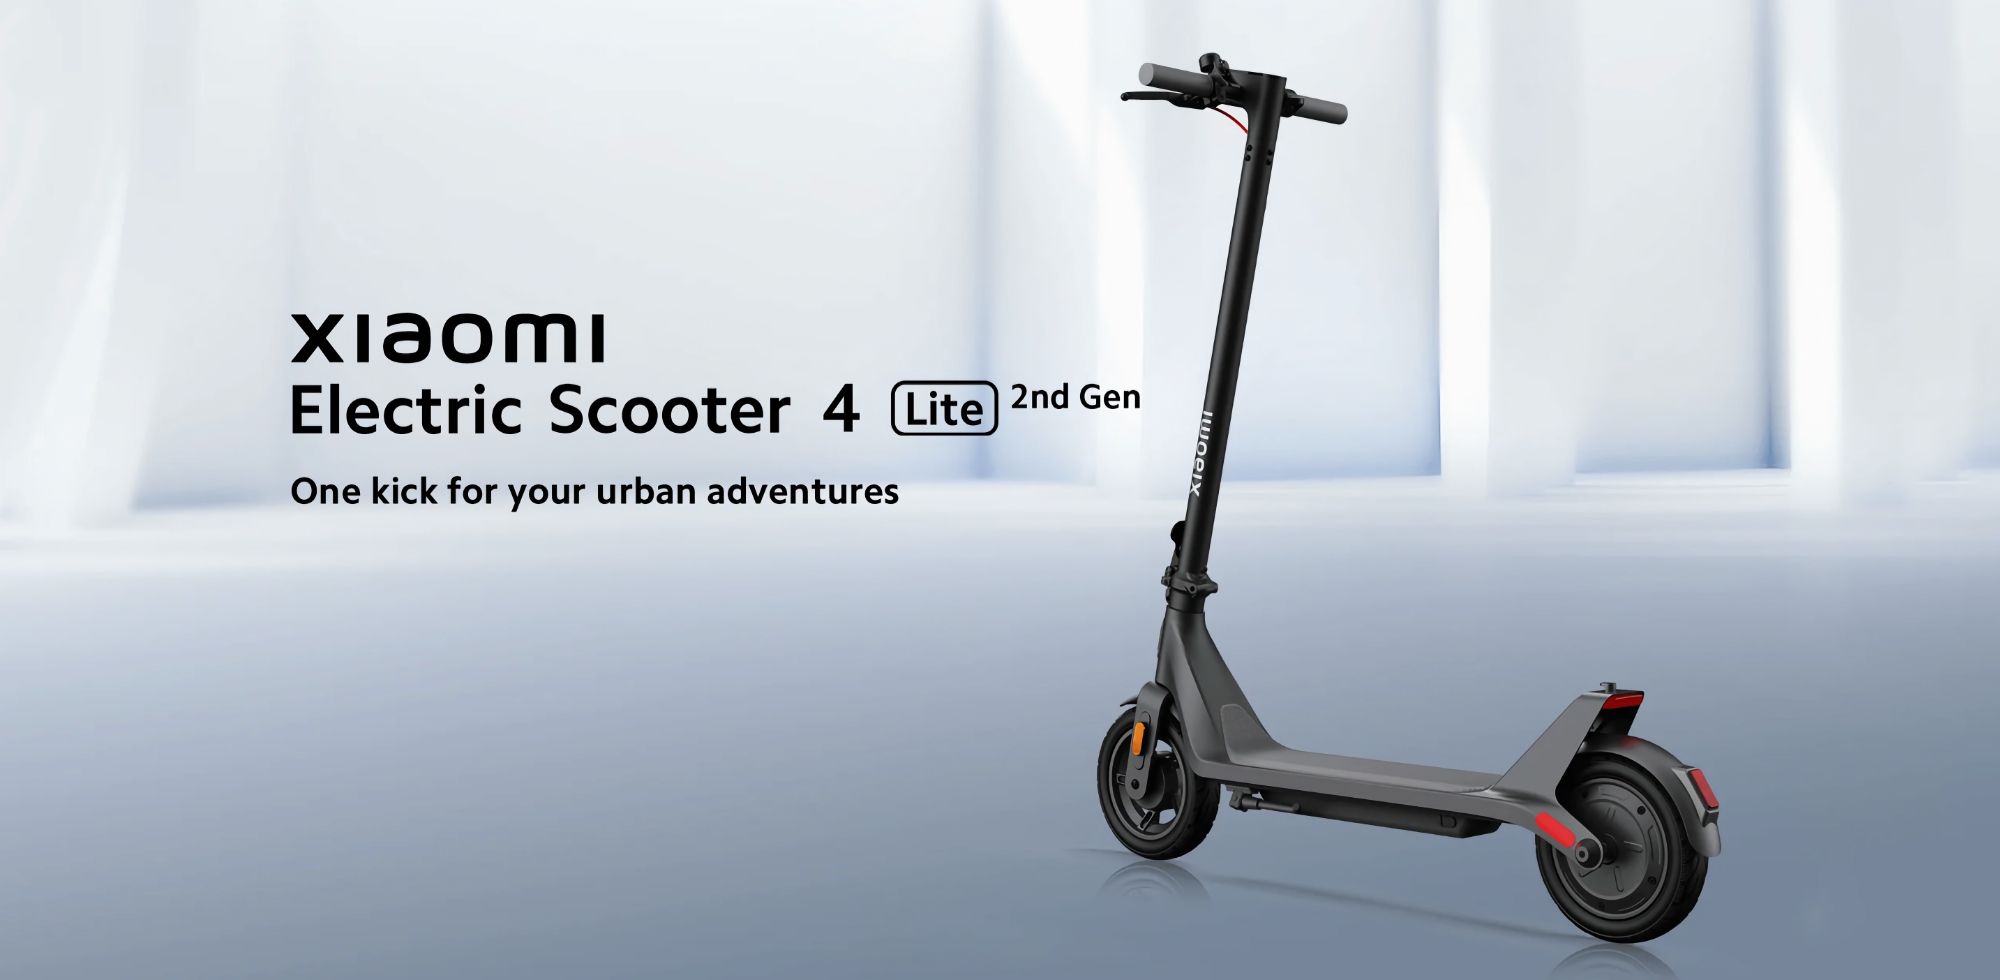 Xiaomi Electric Scooter 4 Lite (2nd Gen) med en räckvidd på upp till 25 km har gjort sin debut i Europa